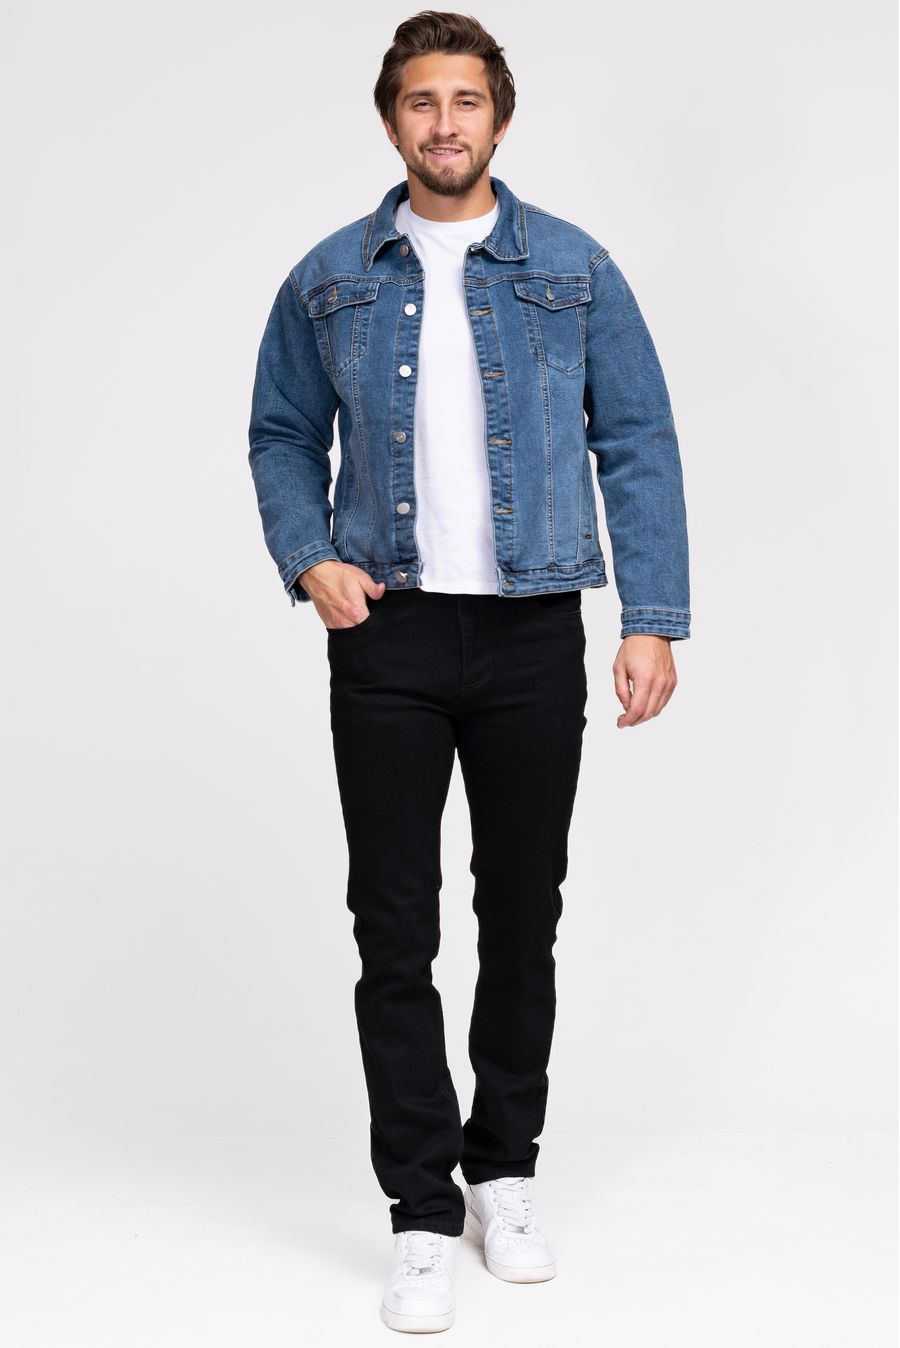 Пиджак мужской (джинсовка) LRZBS 2360 - фото 1